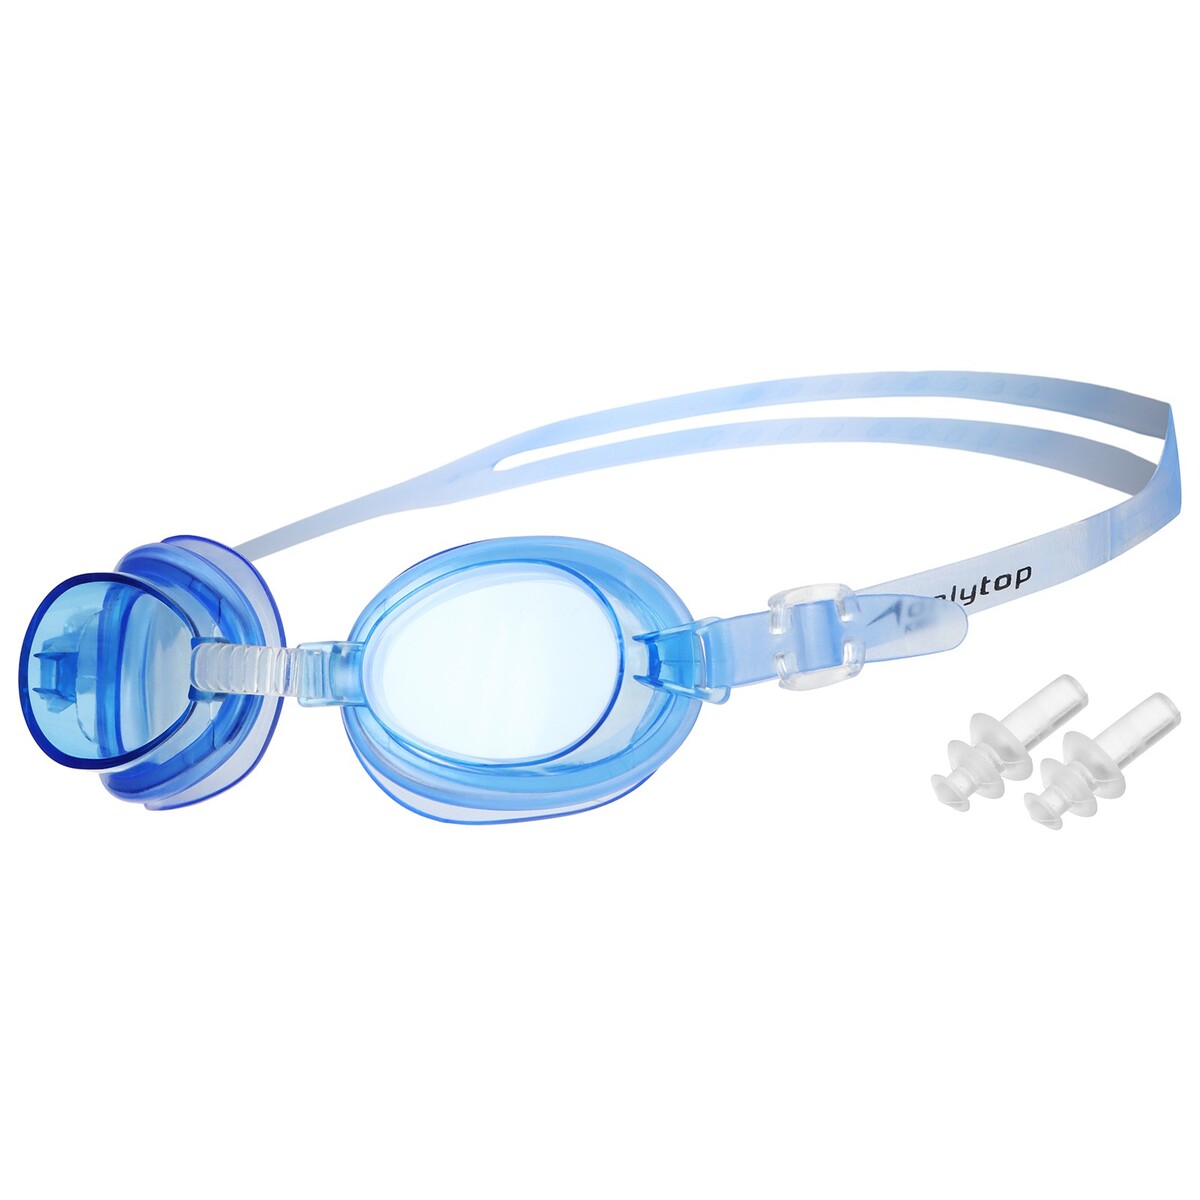 Очки для плавания детские onlytop, беруши, цвет синий очки для плавания детские onlytop беруши белый синий